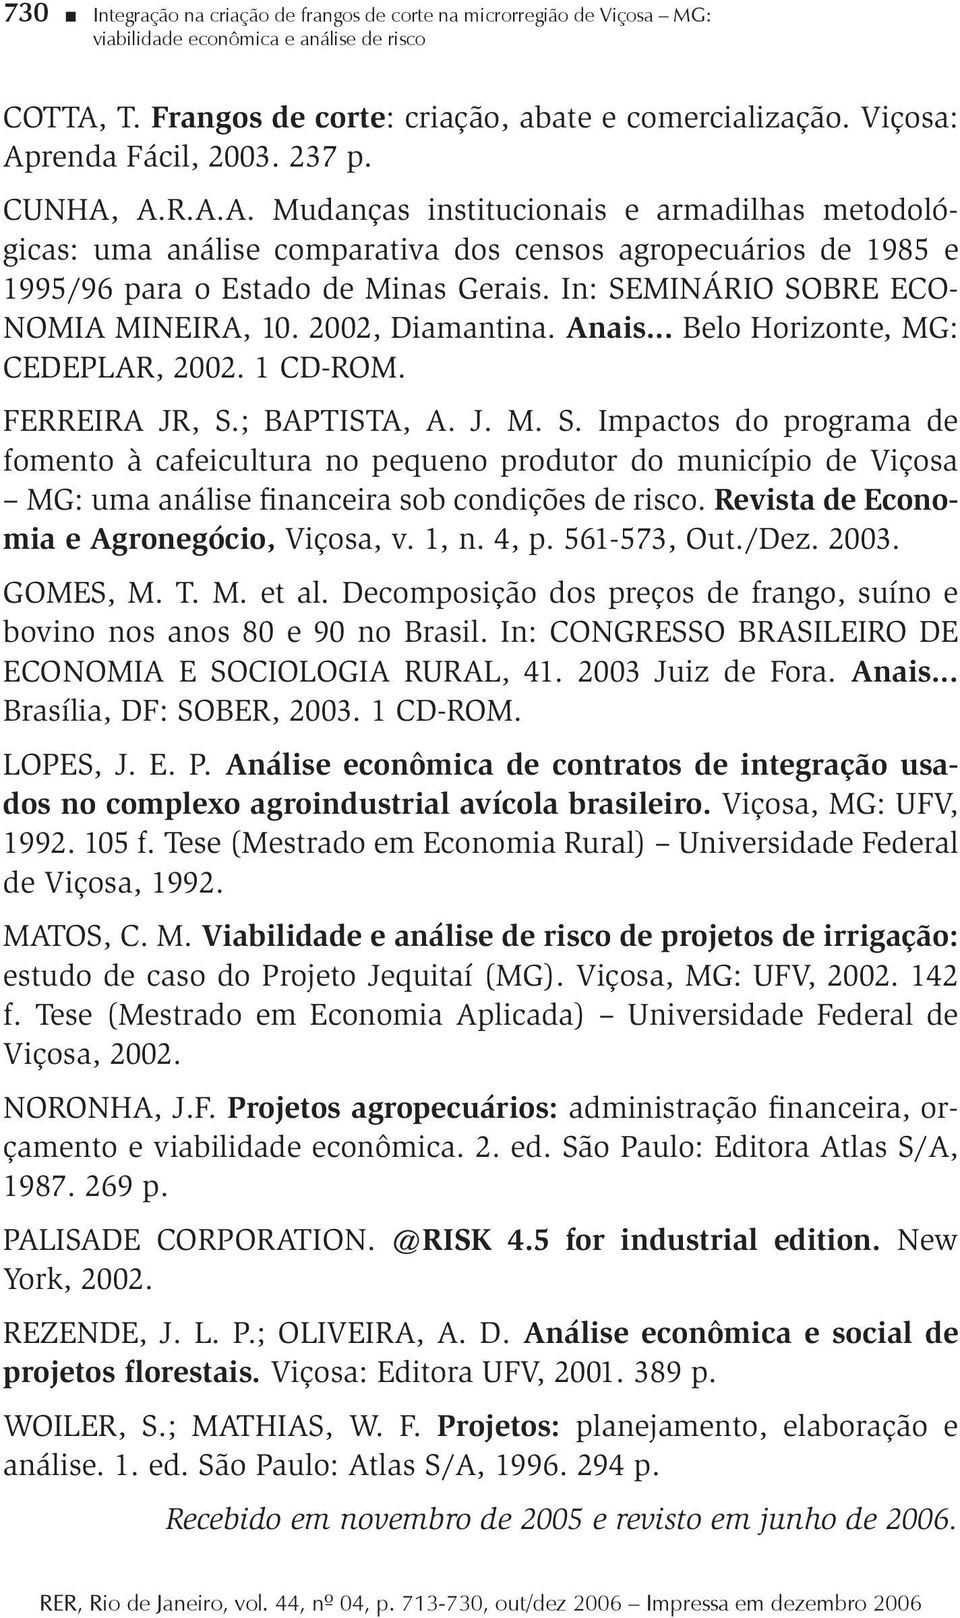 In: SEMINÁRIO SOBRE ECO- NOMIA MINEIRA, 10. 2002, Diamanina. Anais... Belo Horizone, MG: CEDEPLAR, 2002. 1 CD-ROM. FERREIRA JR, S.; BAPTISTA, A. J. M. S. Impacos do programa de fomeno à cafeiculura no pequeno produor do município de Viçosa MG: uma análise financeira sob condições de risco.